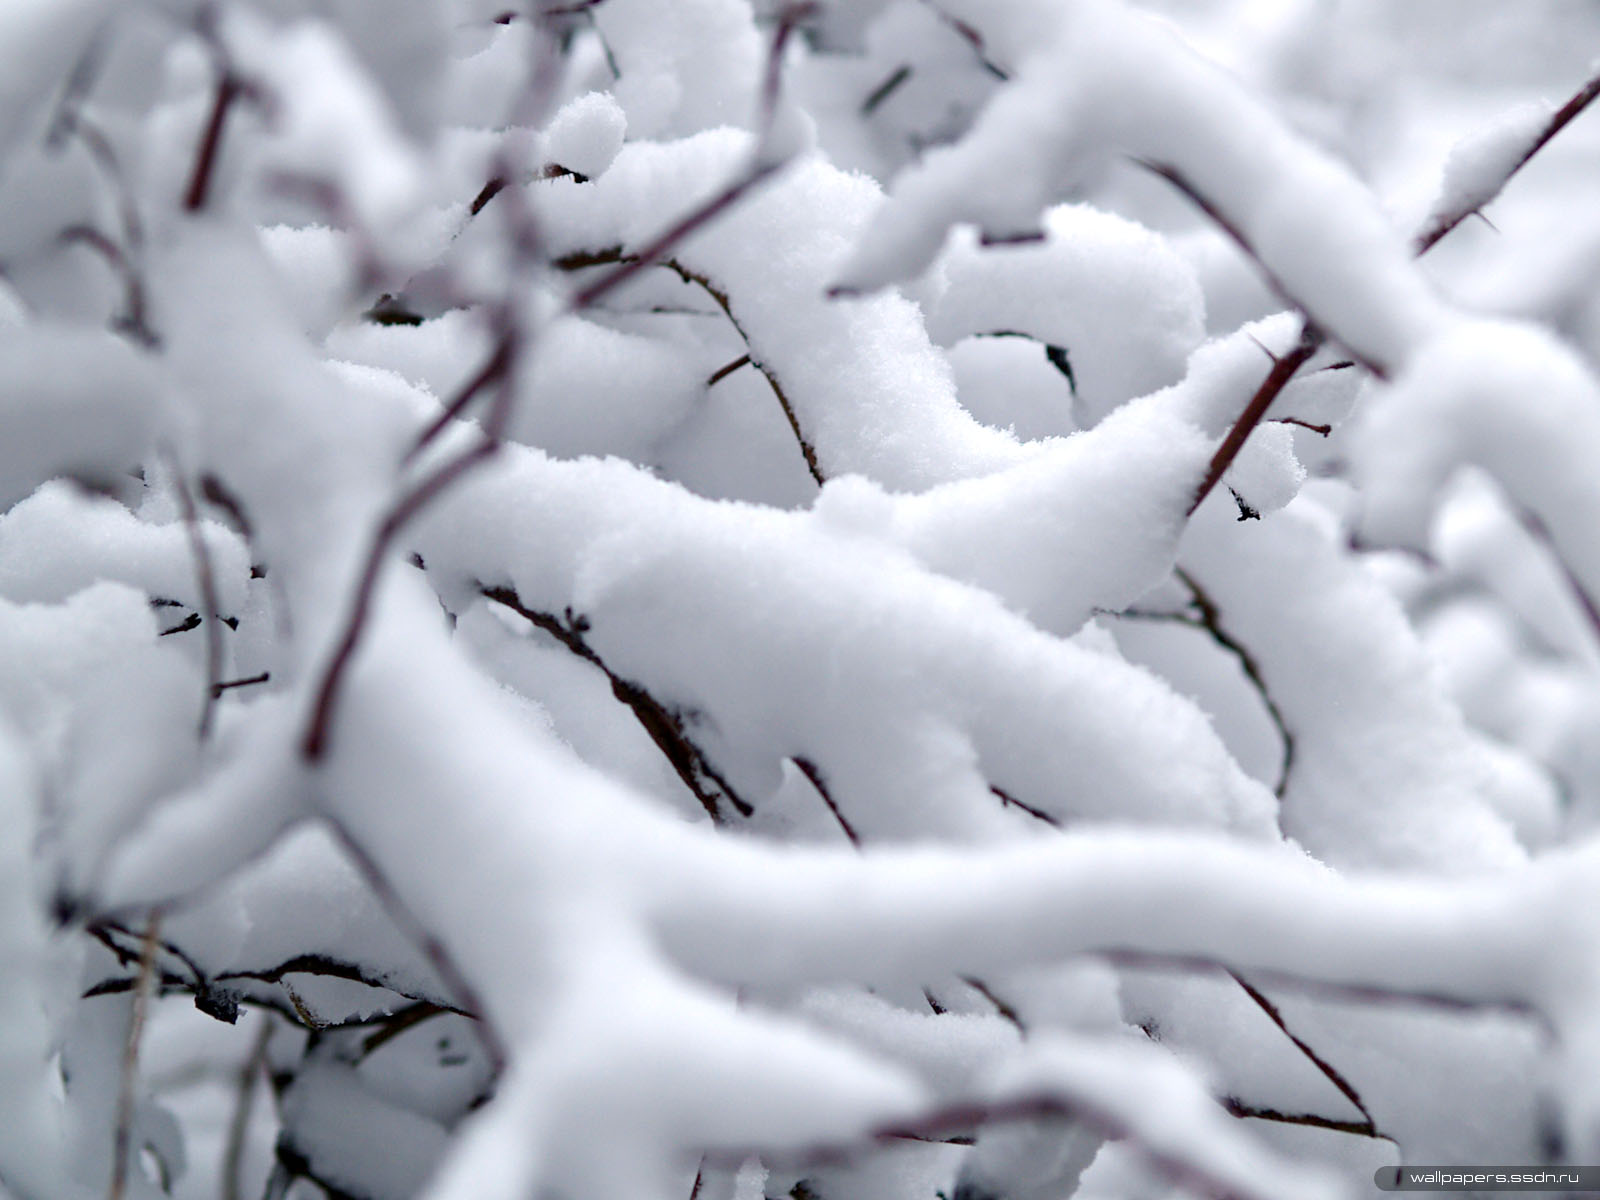 Moskva: Tuyết rơi nhiều, trời sẽ ấm trong vòng 10 ngày